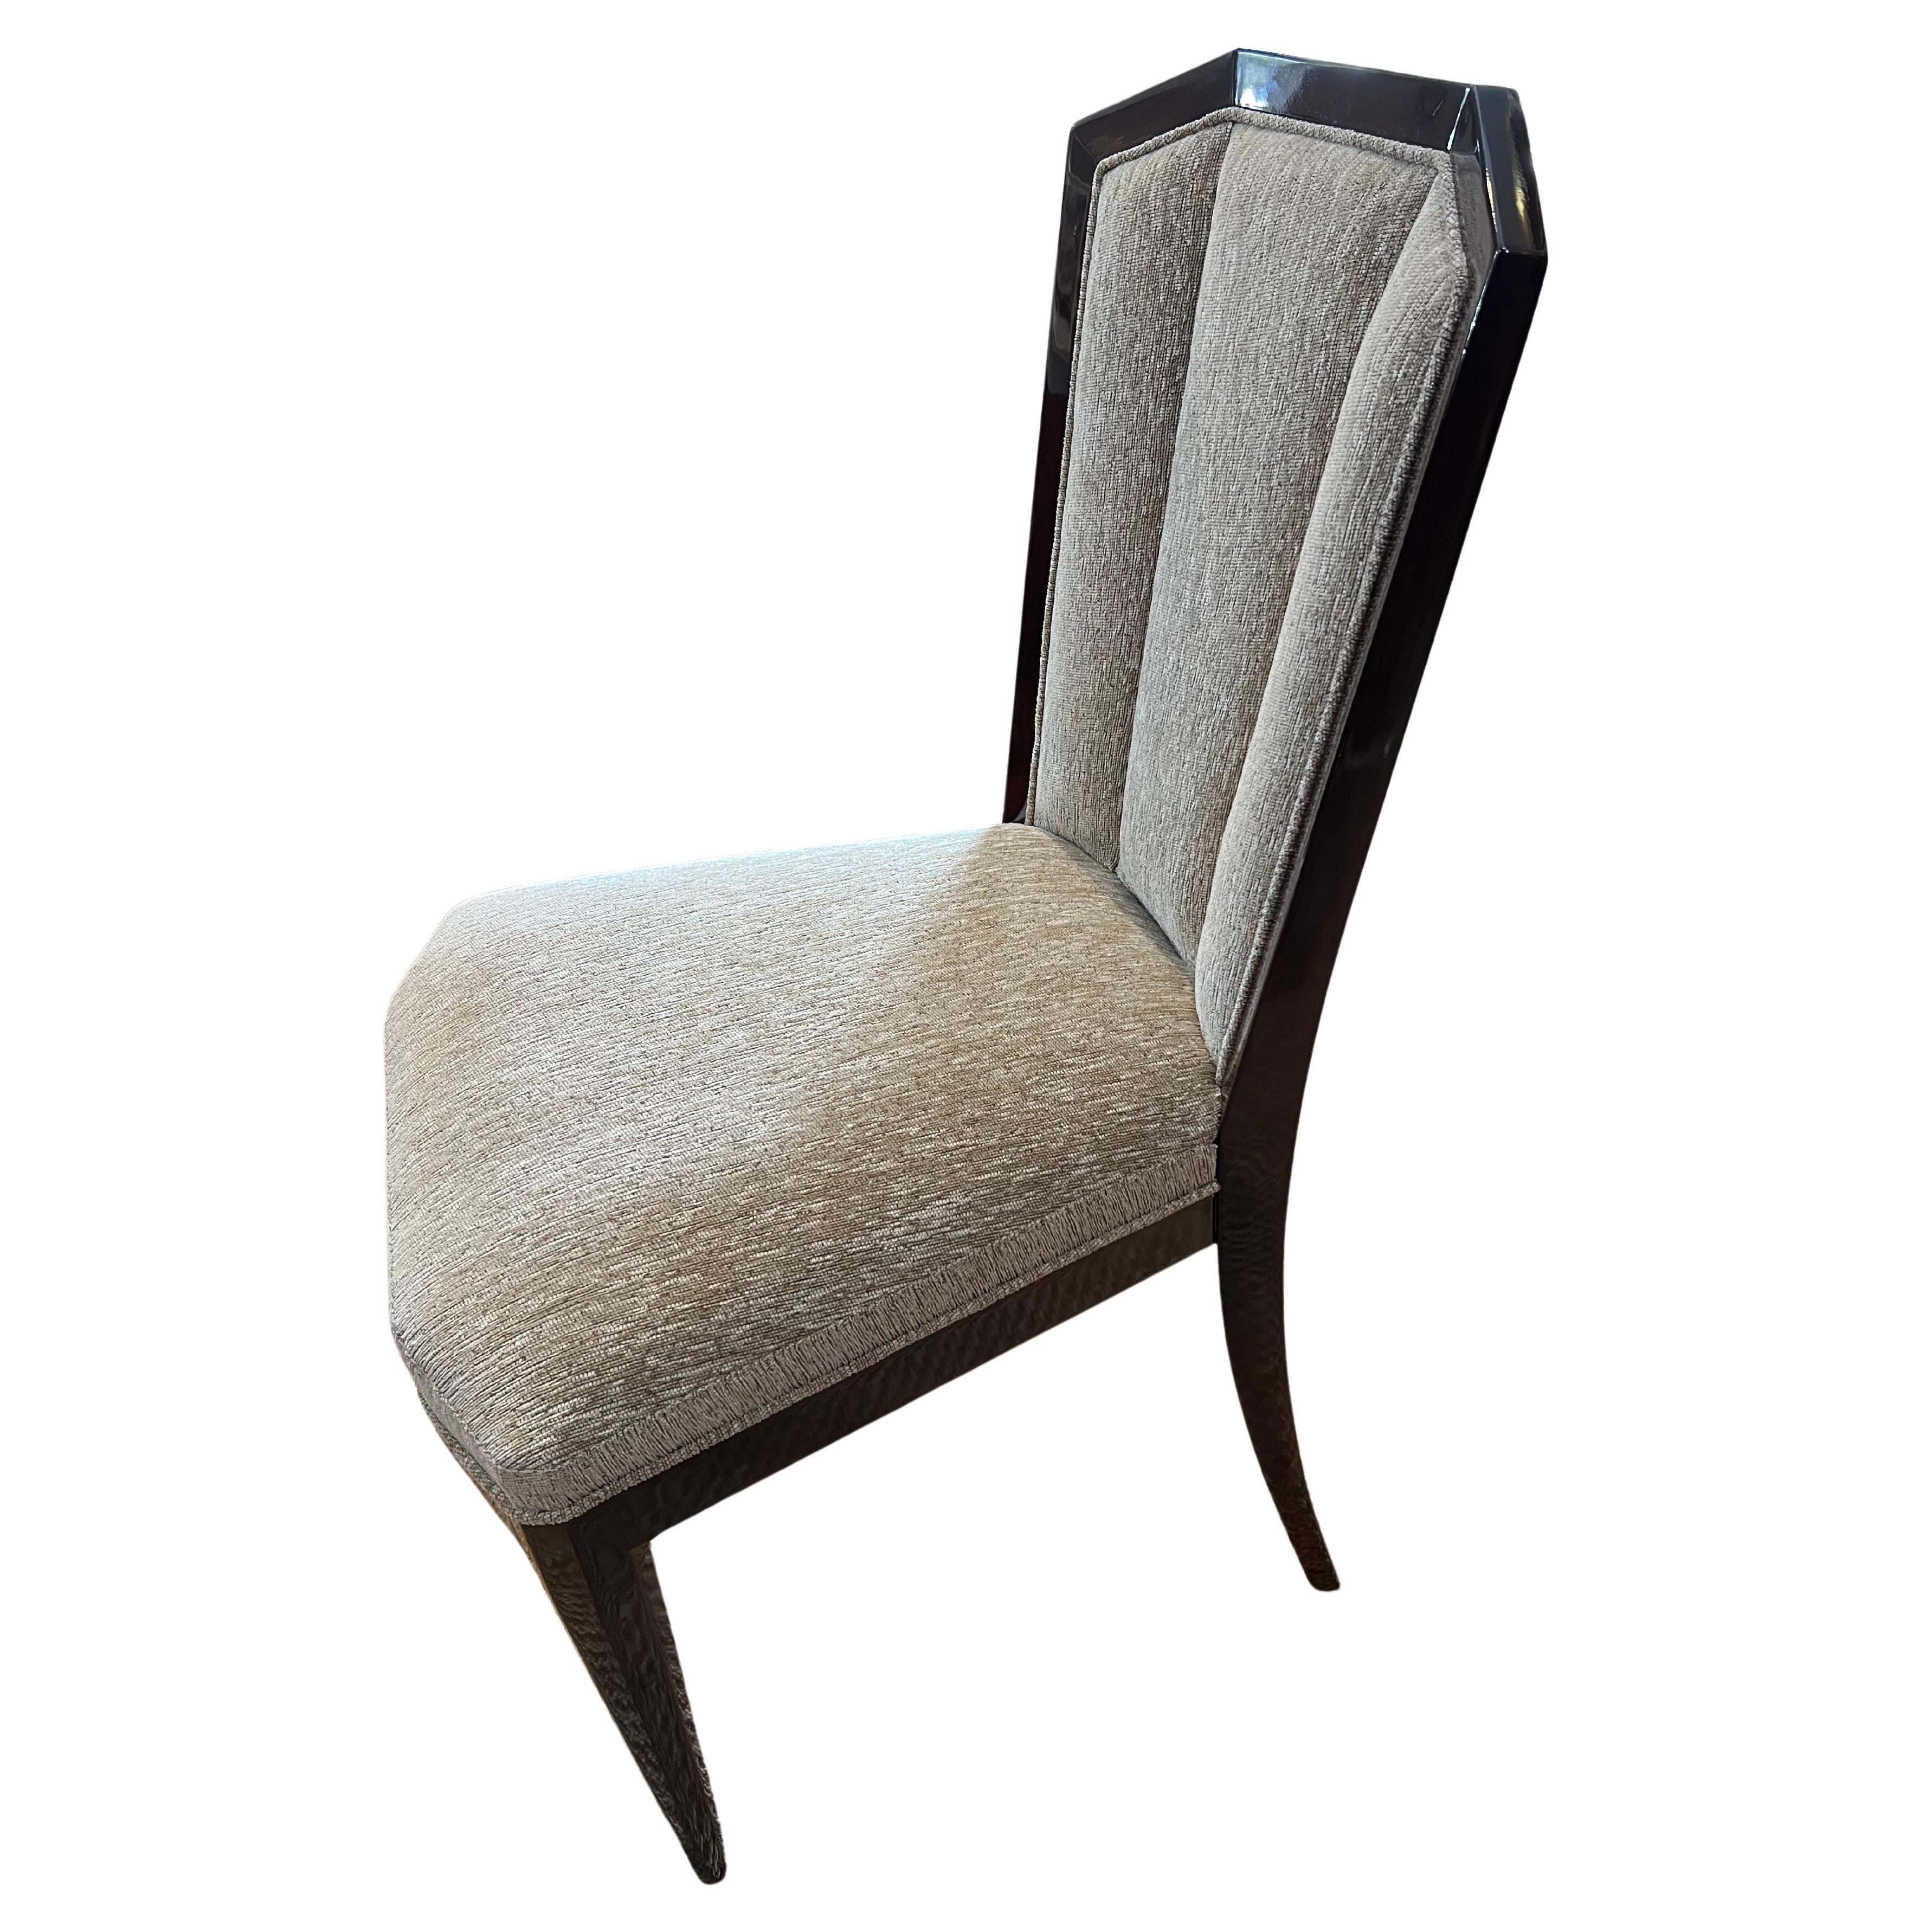 Satz von 8 schönen Art Deco Stühlen aus Walnussholz. Neu poliert und neu gepolstert. 
Kann separat verkauft werden.
Der Zustand ist perfekt. Wiederhergestellt
Frankreich, ca. 1930er Jahre
19 